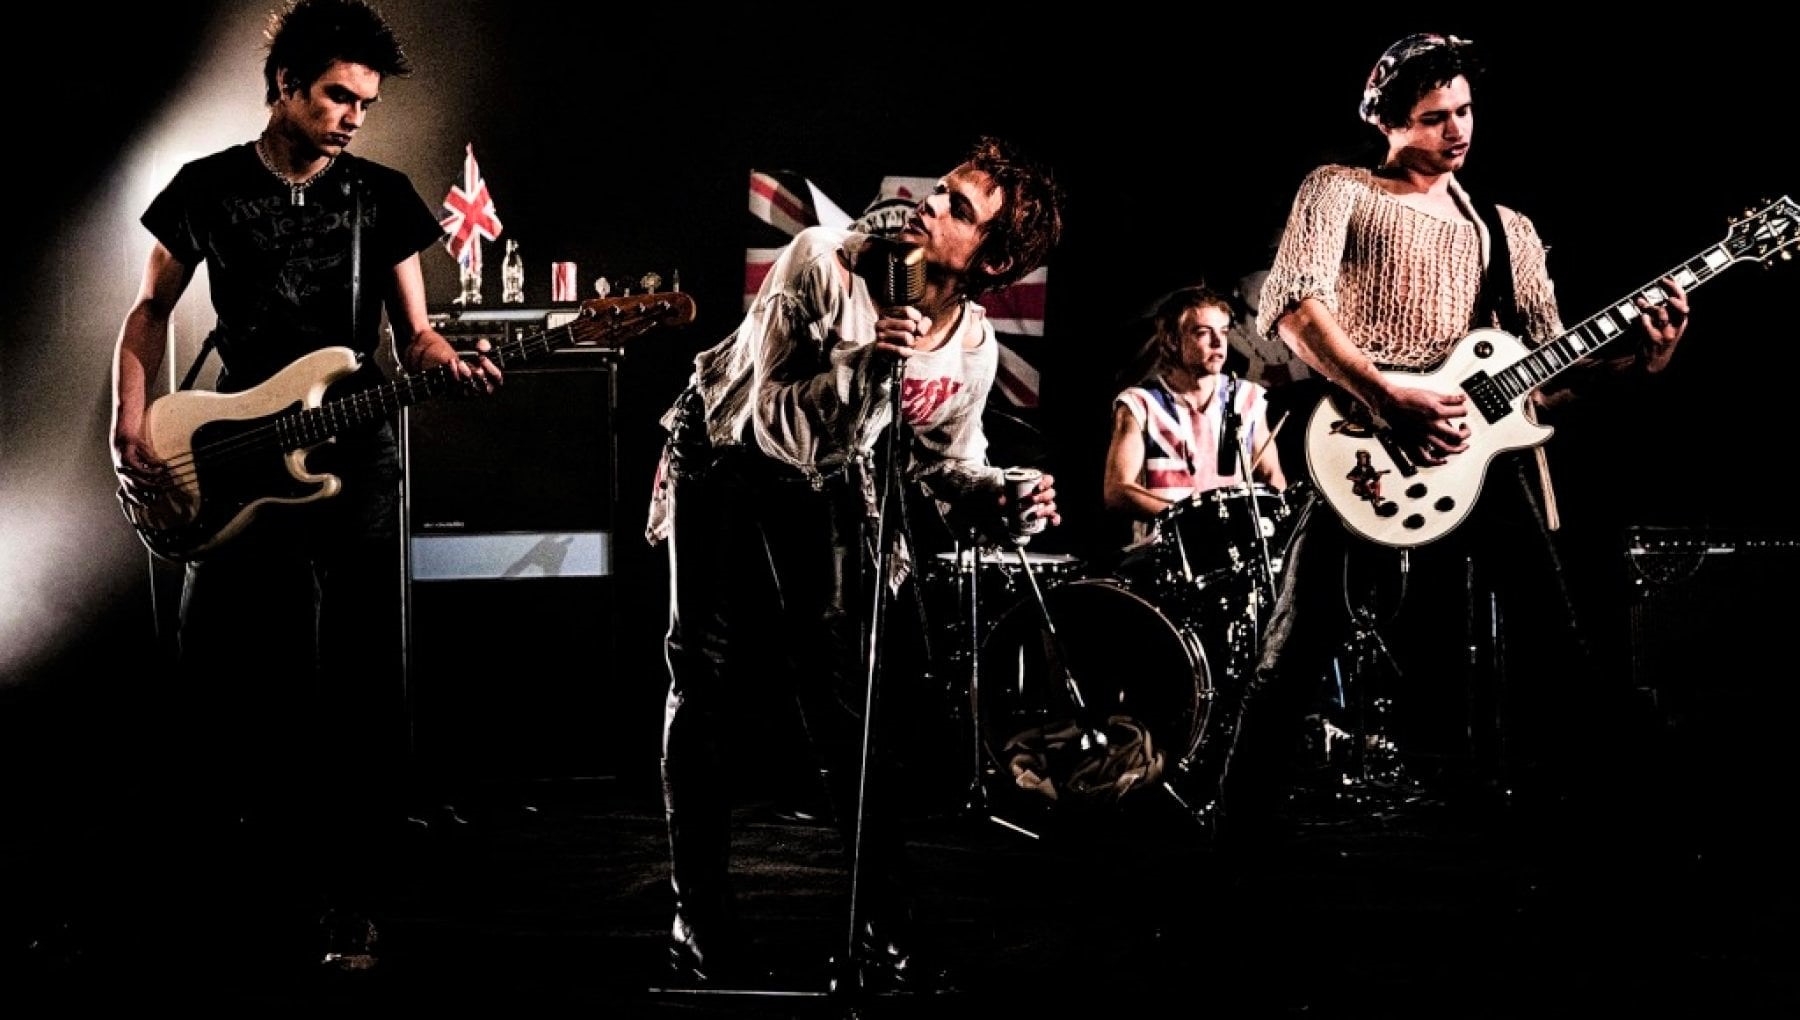 Serie Tv Pistols: musical-drama sulla band punk rock britannica, nel cast anche Maisie Williams